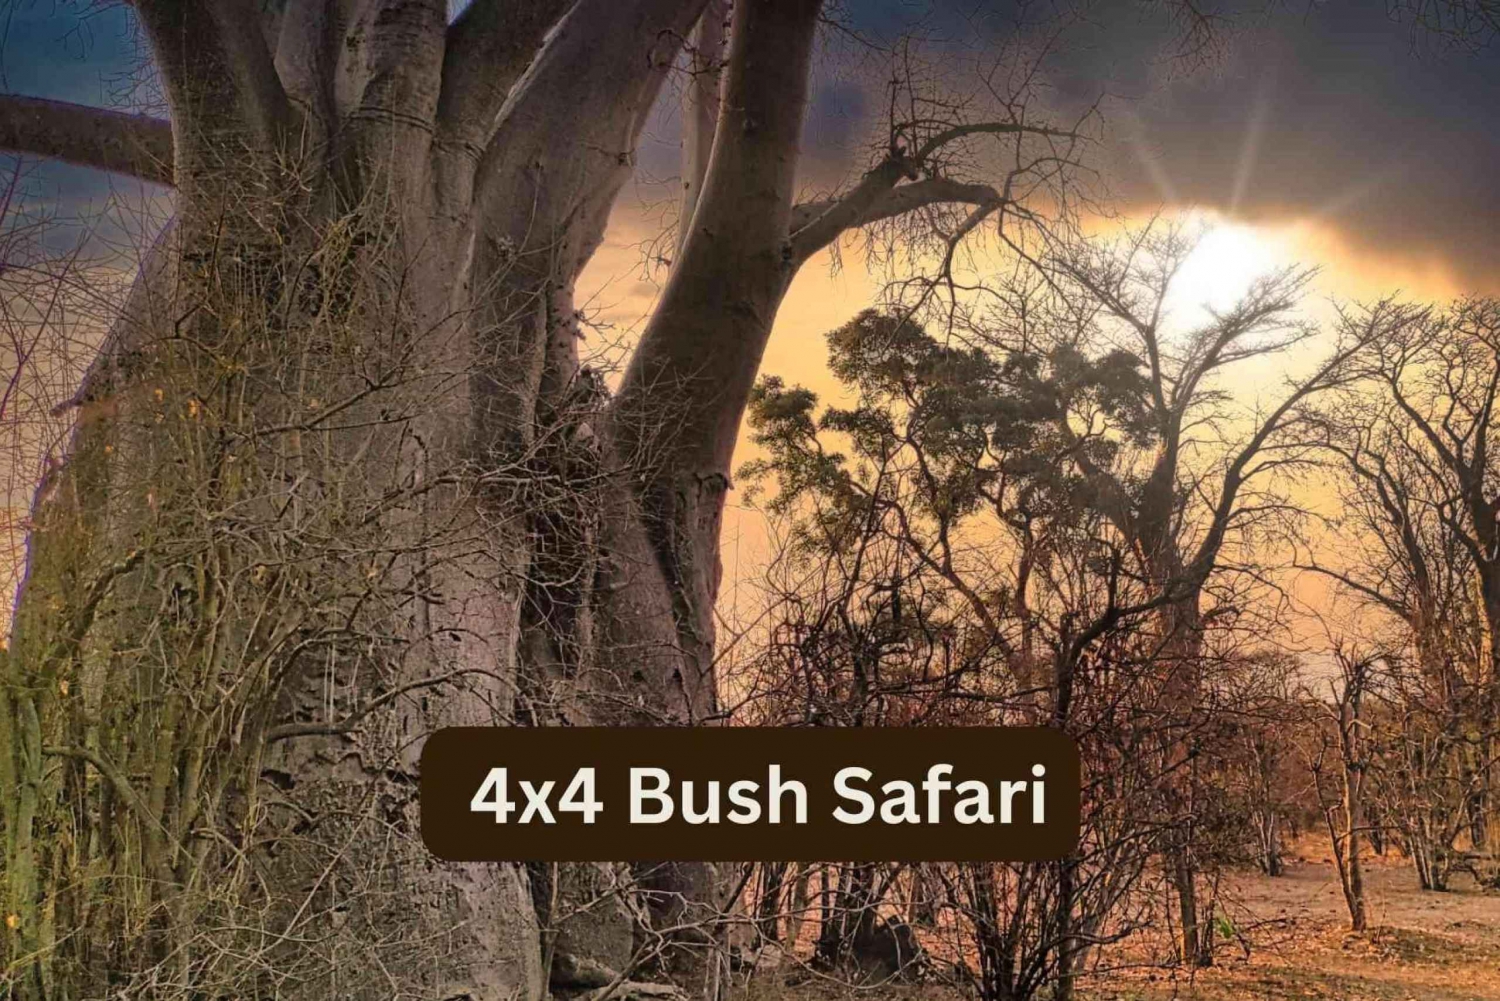 Victoria Falls: 4x4 Bush Safari